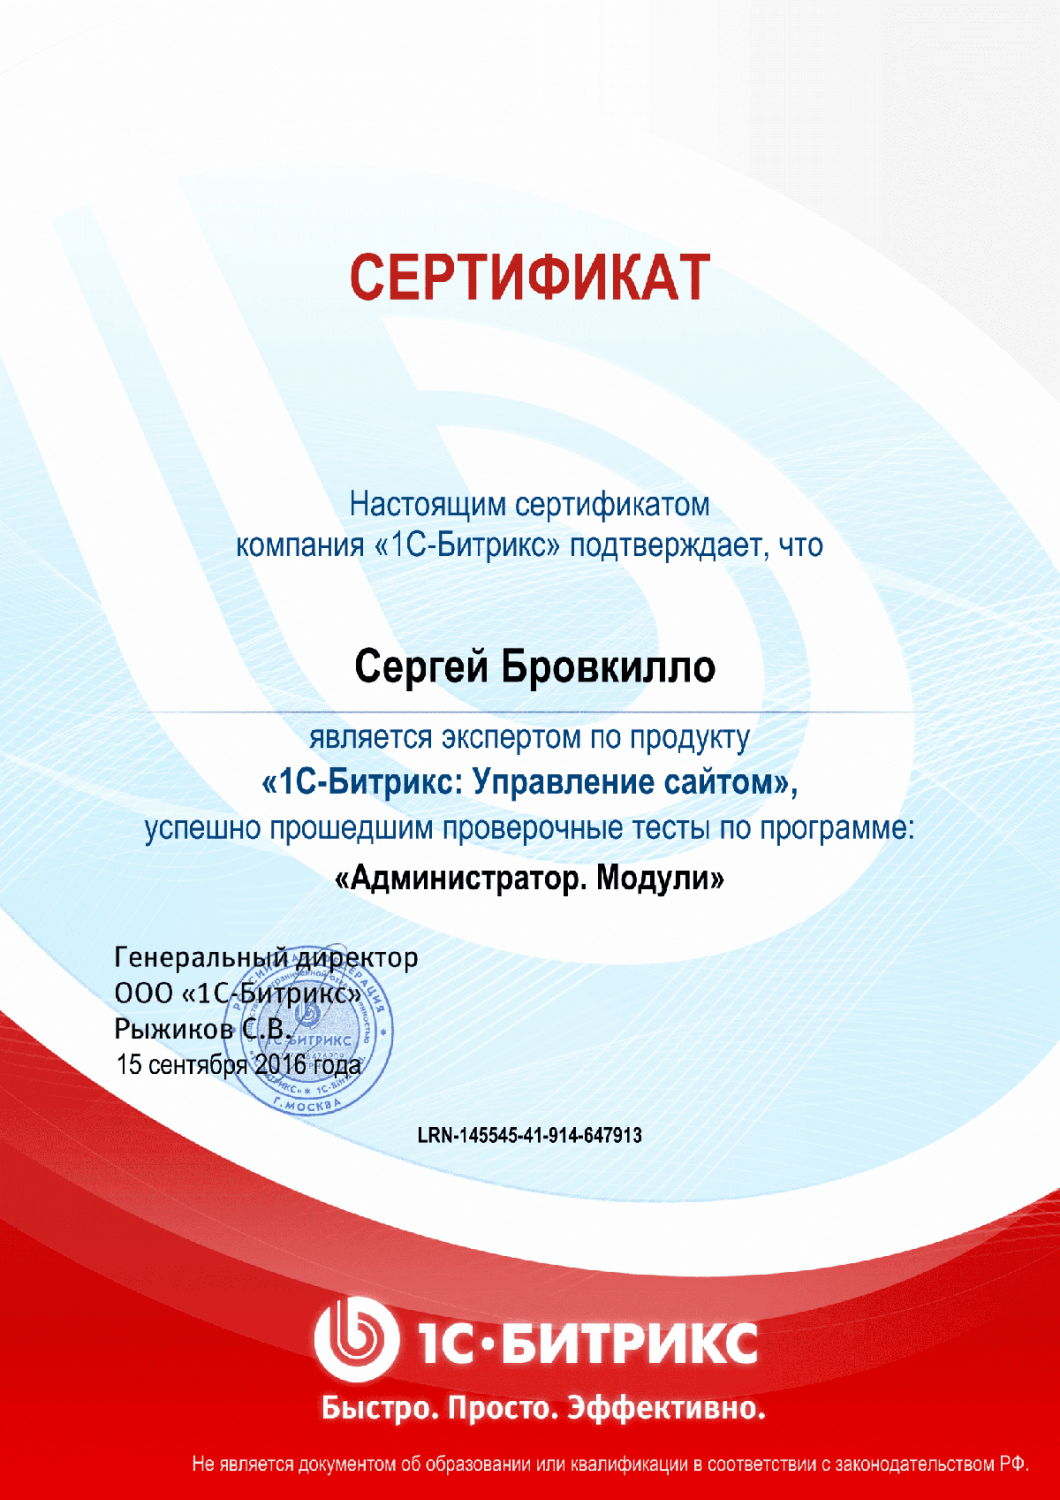 Сертификат эксперта по программе "Администратор. Модули" в Йошкар-Олы